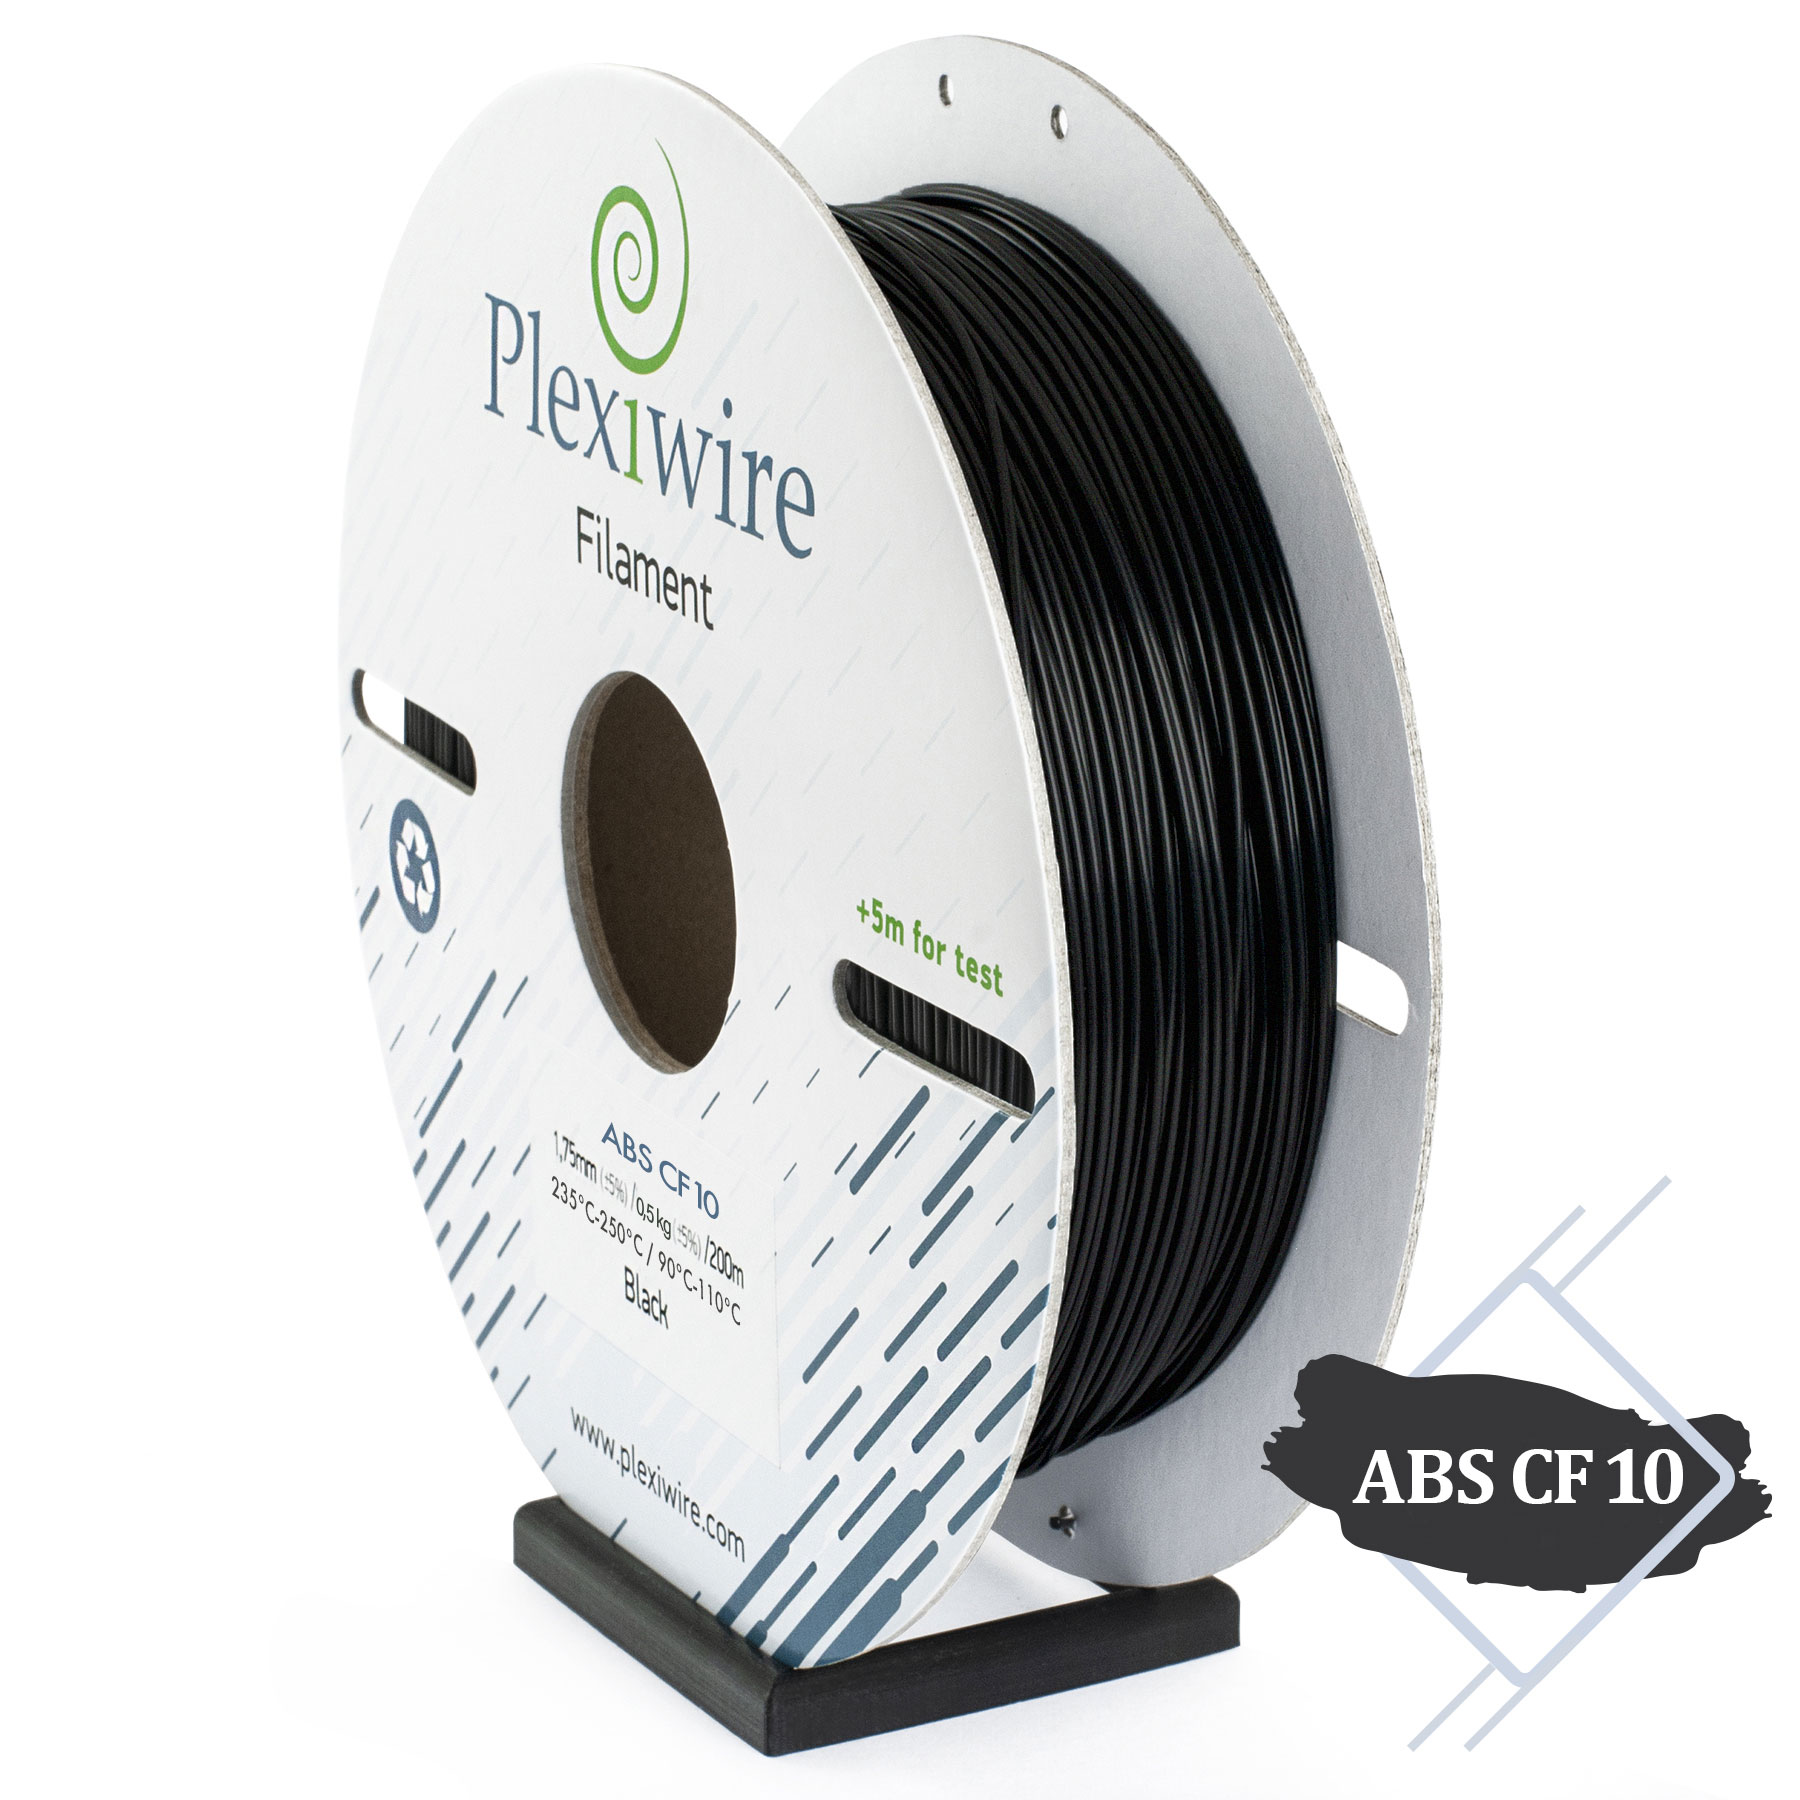 Plexiwire filament ABS CF10 - это стандартный абс с добавлением 10% карбона